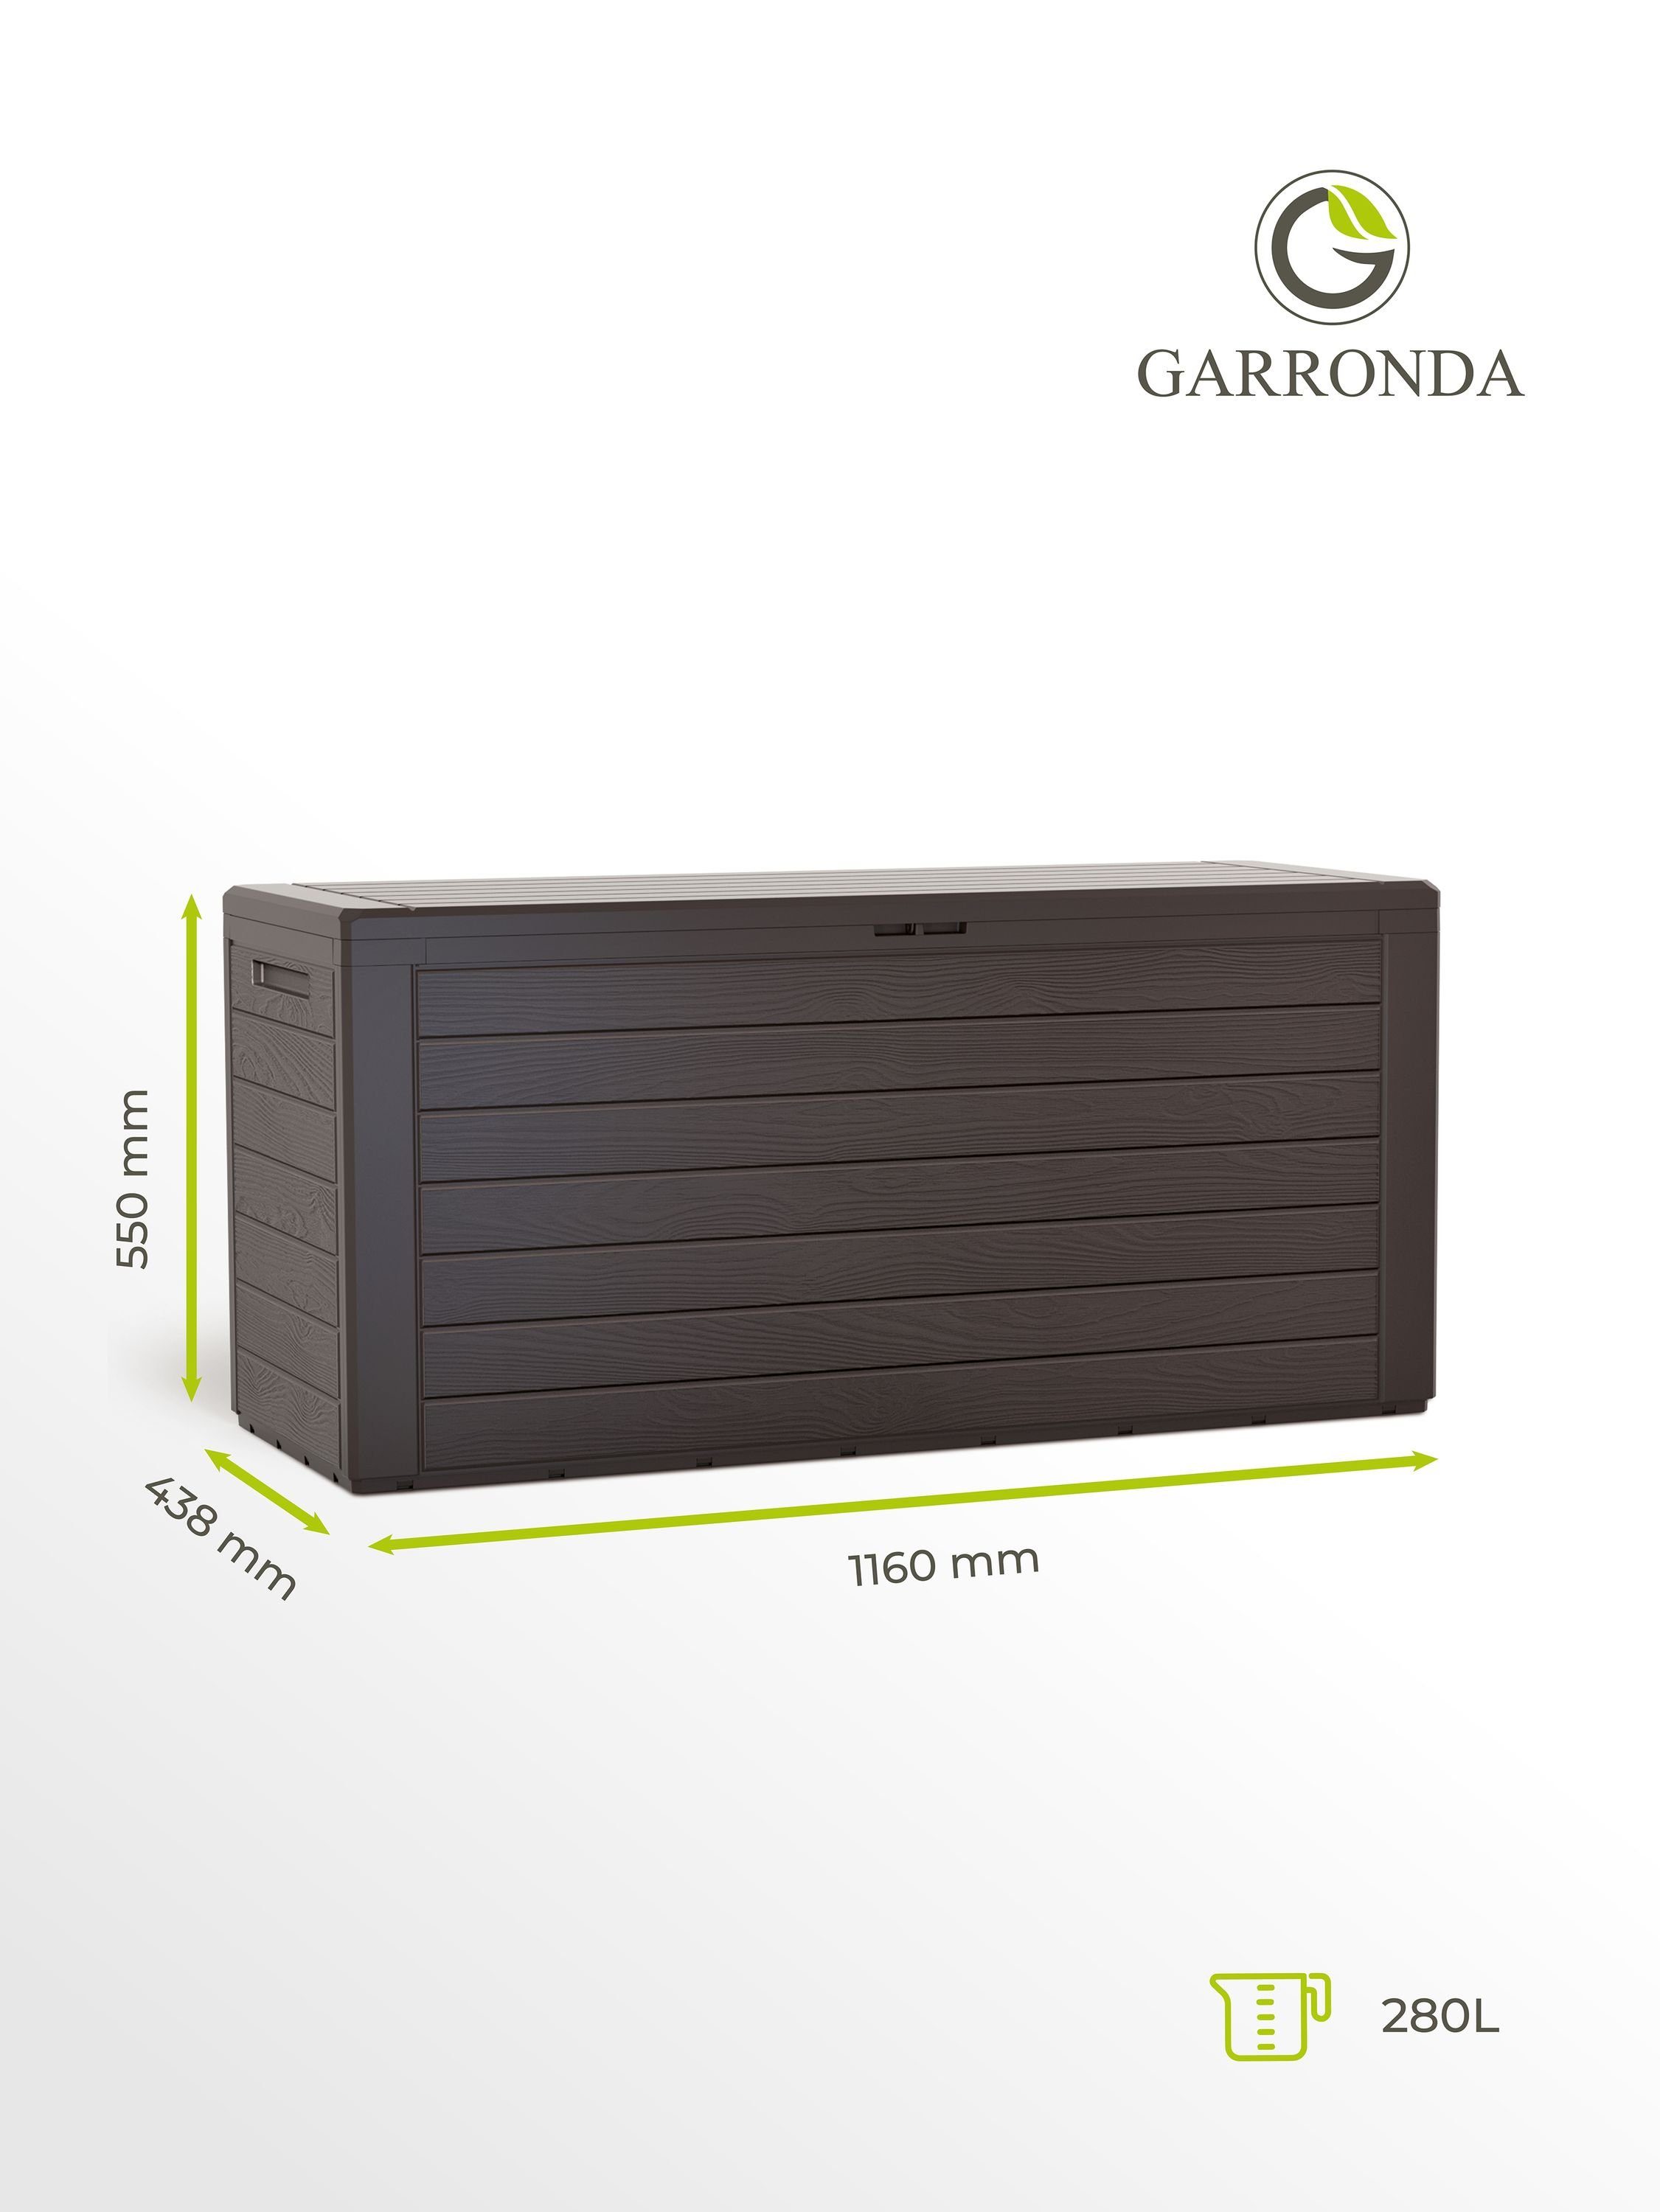 Garronda Gerätebox Gartenbox 280L Gartenruhe GD-0050 Kissenbox Braun